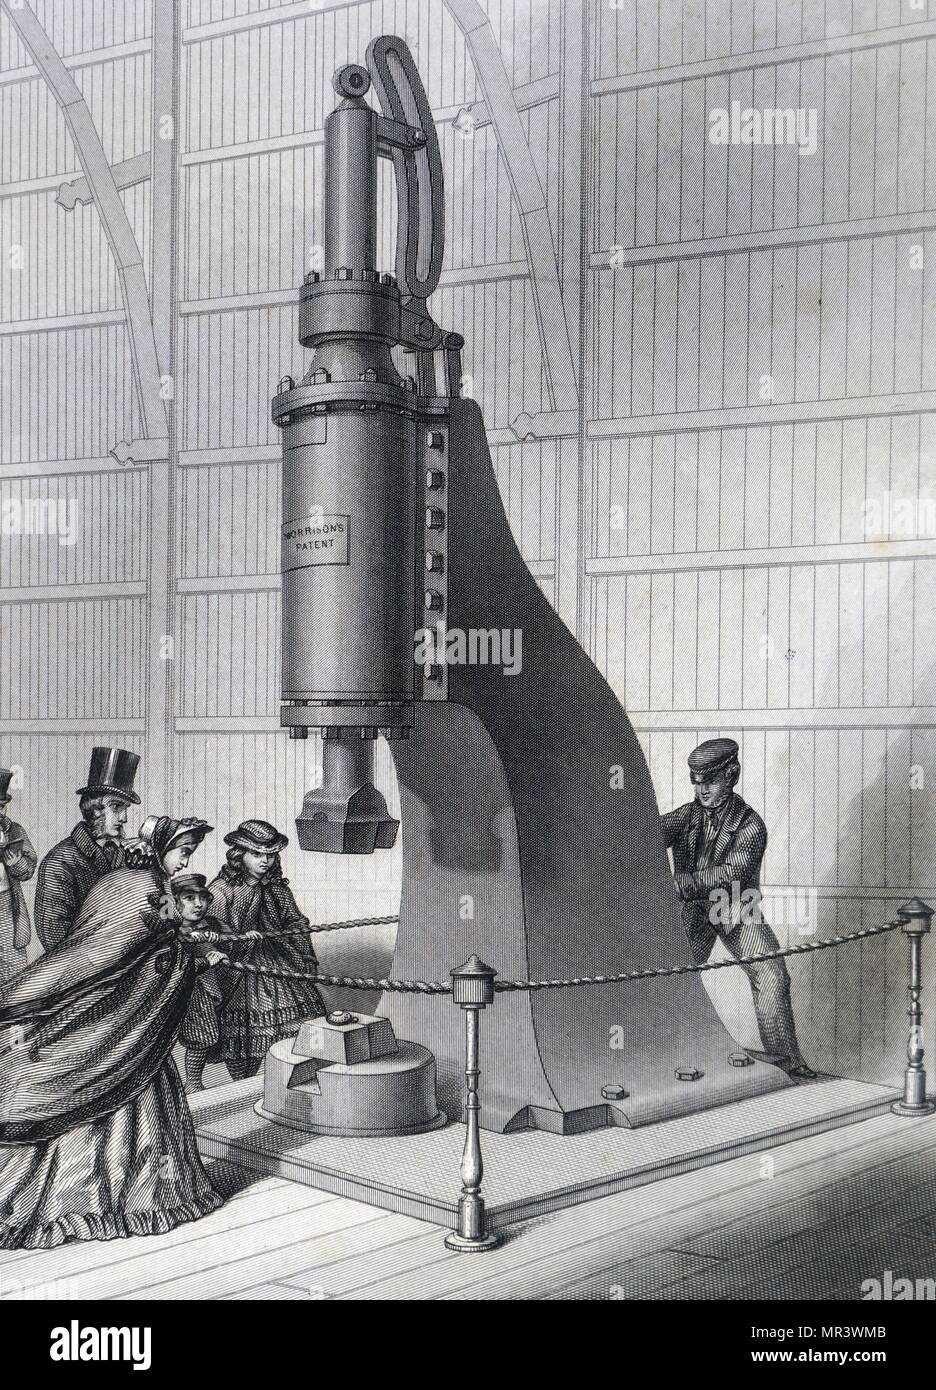 Gravur Darstellung Marioni Zylinder drücken, um illustriert Arbeit verwendet. Diese Maschine konnte 7.000 Exemplare pro Stunde drehen Sie mit harten Verpackung auf trockenem Papier. Vom 19. Jahrhundert Stockfoto